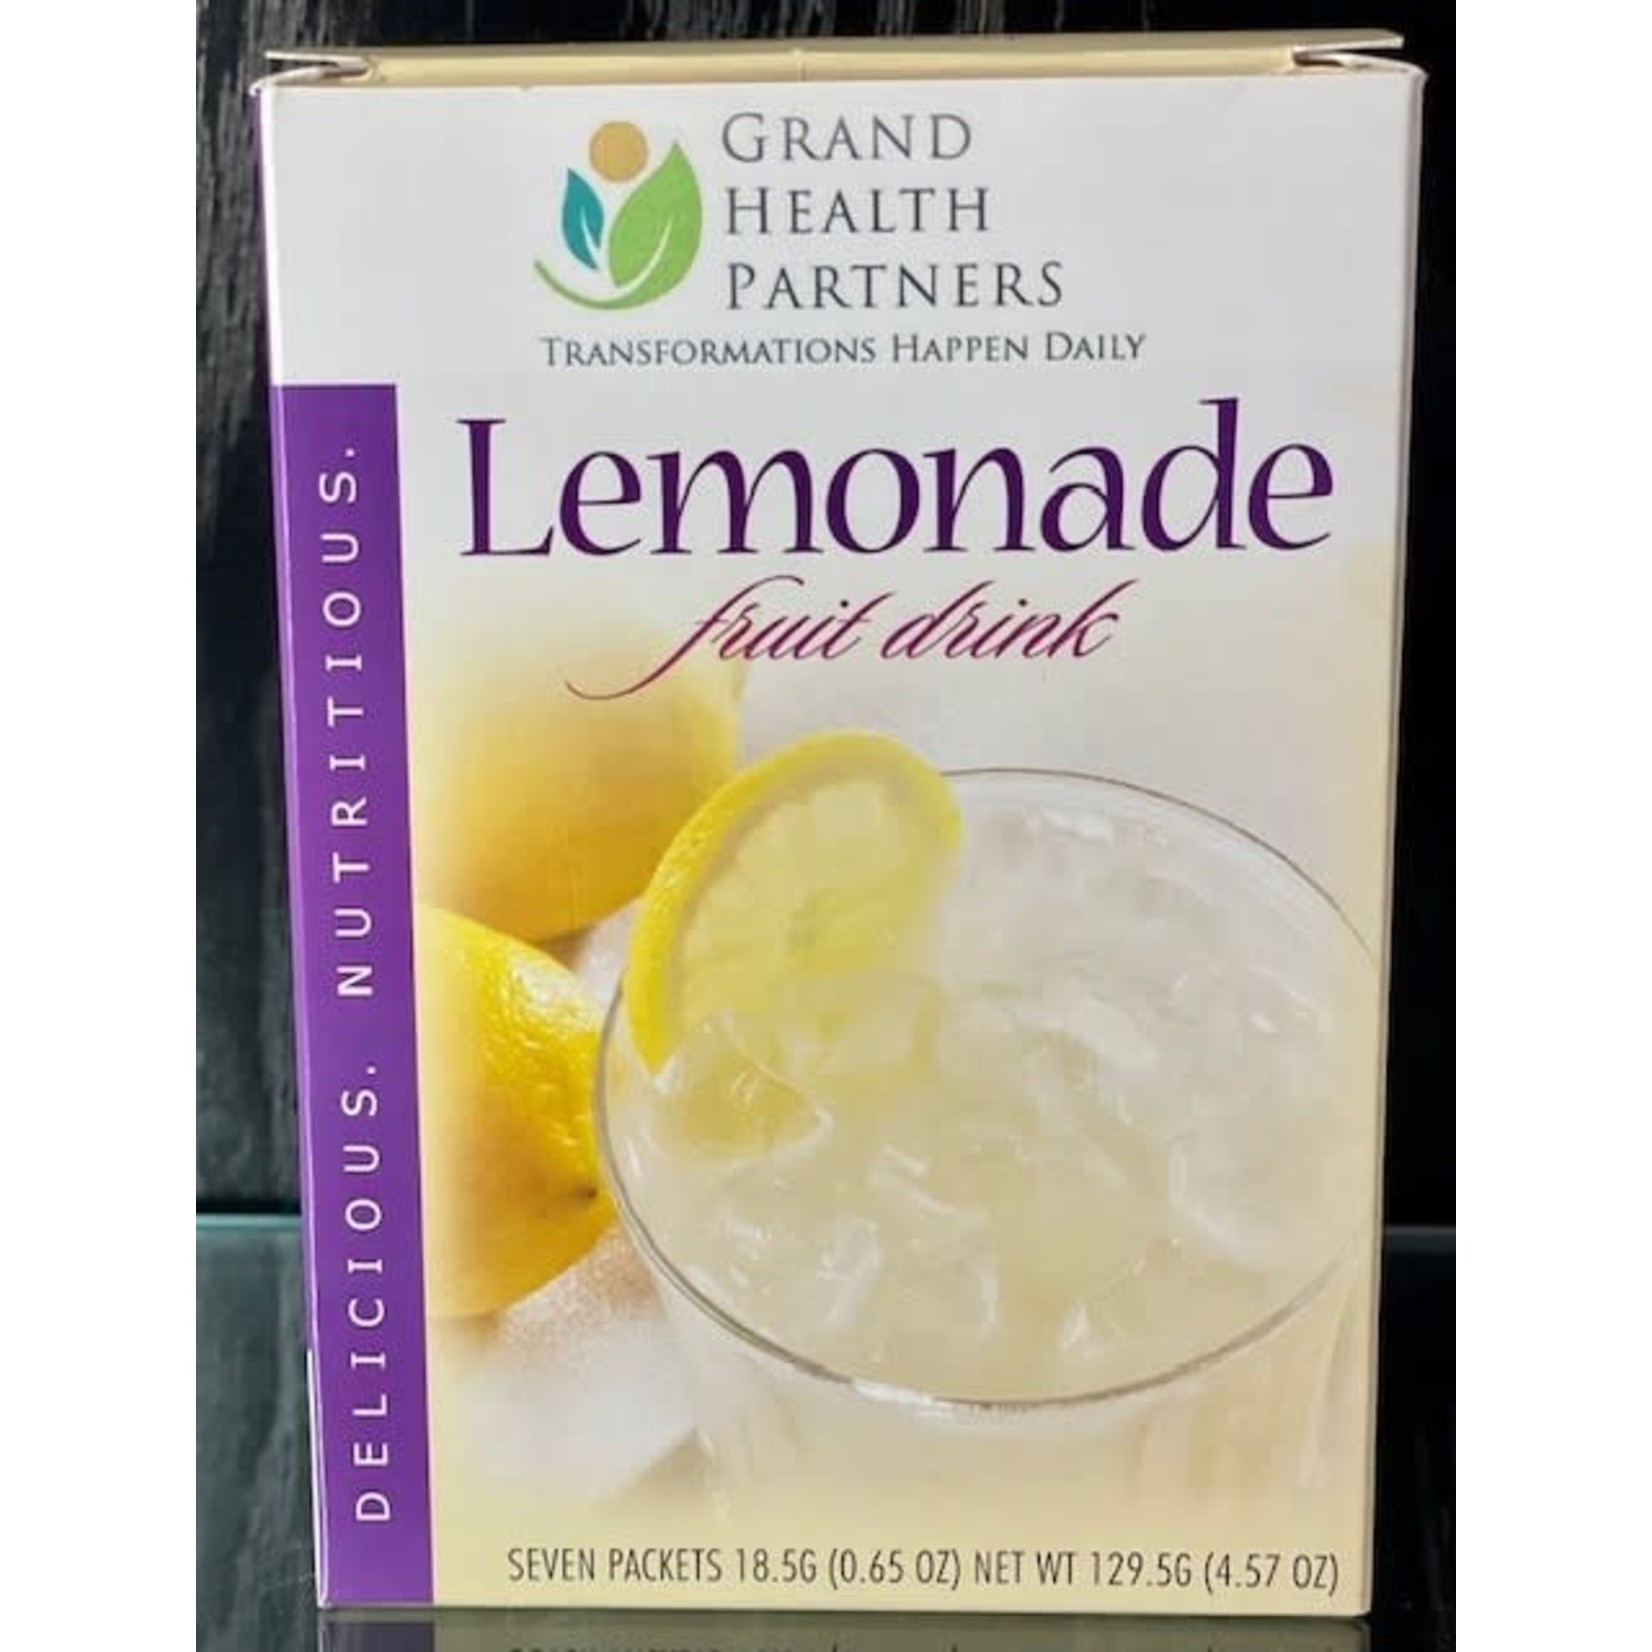 Lemonade Cold Drink